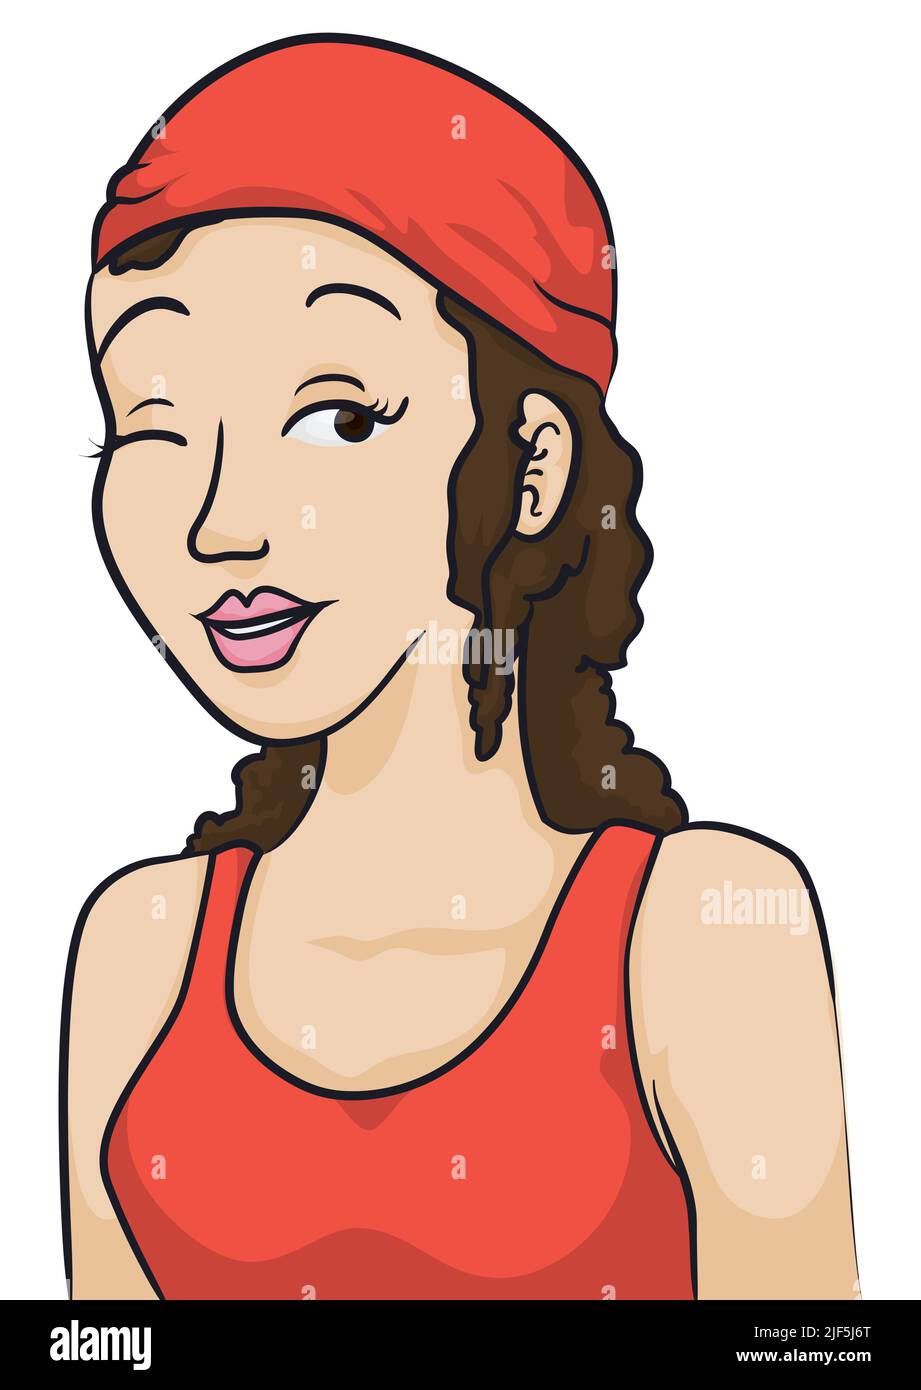 Ritratto di giovane ragazza che indossa una bandana rossa e blusa, che ti avvolse in stile cartone animato. Illustrazione Vettoriale